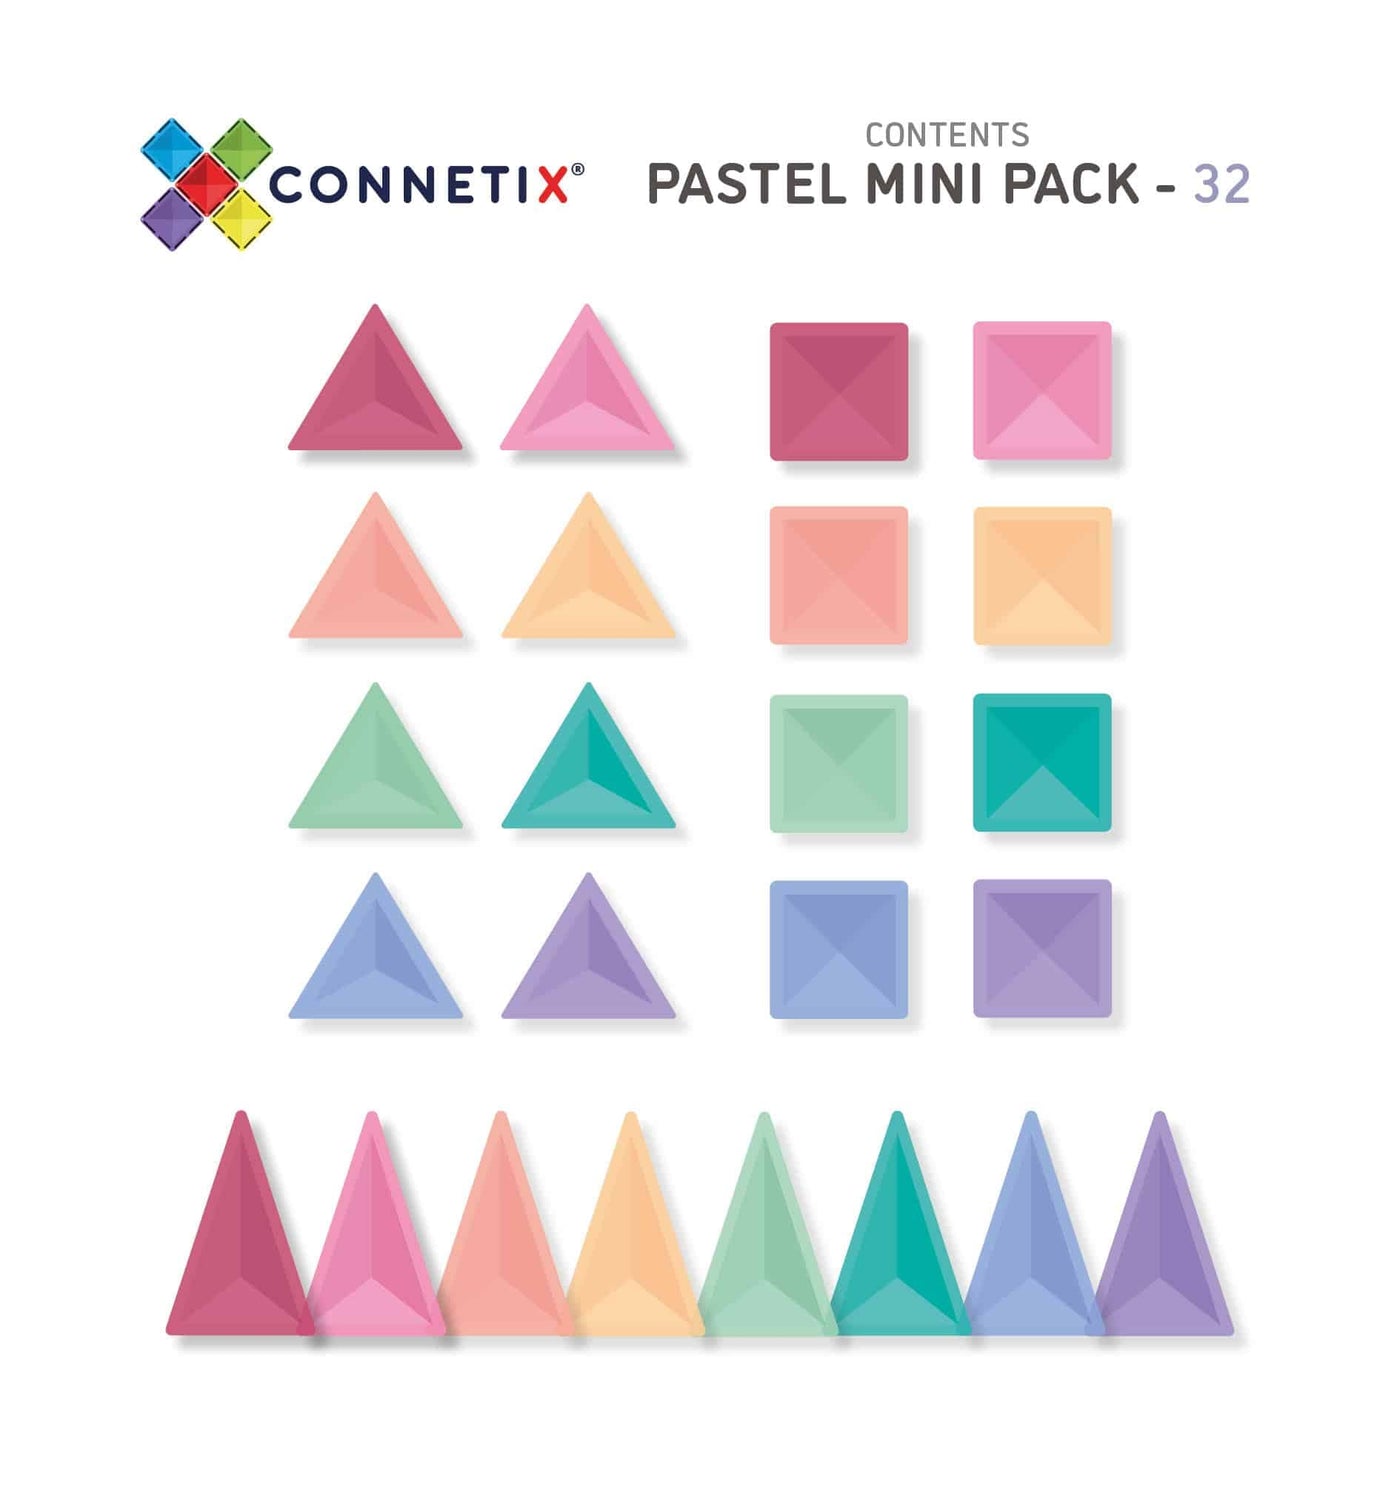 Connetix Pastel Mini Pack contents